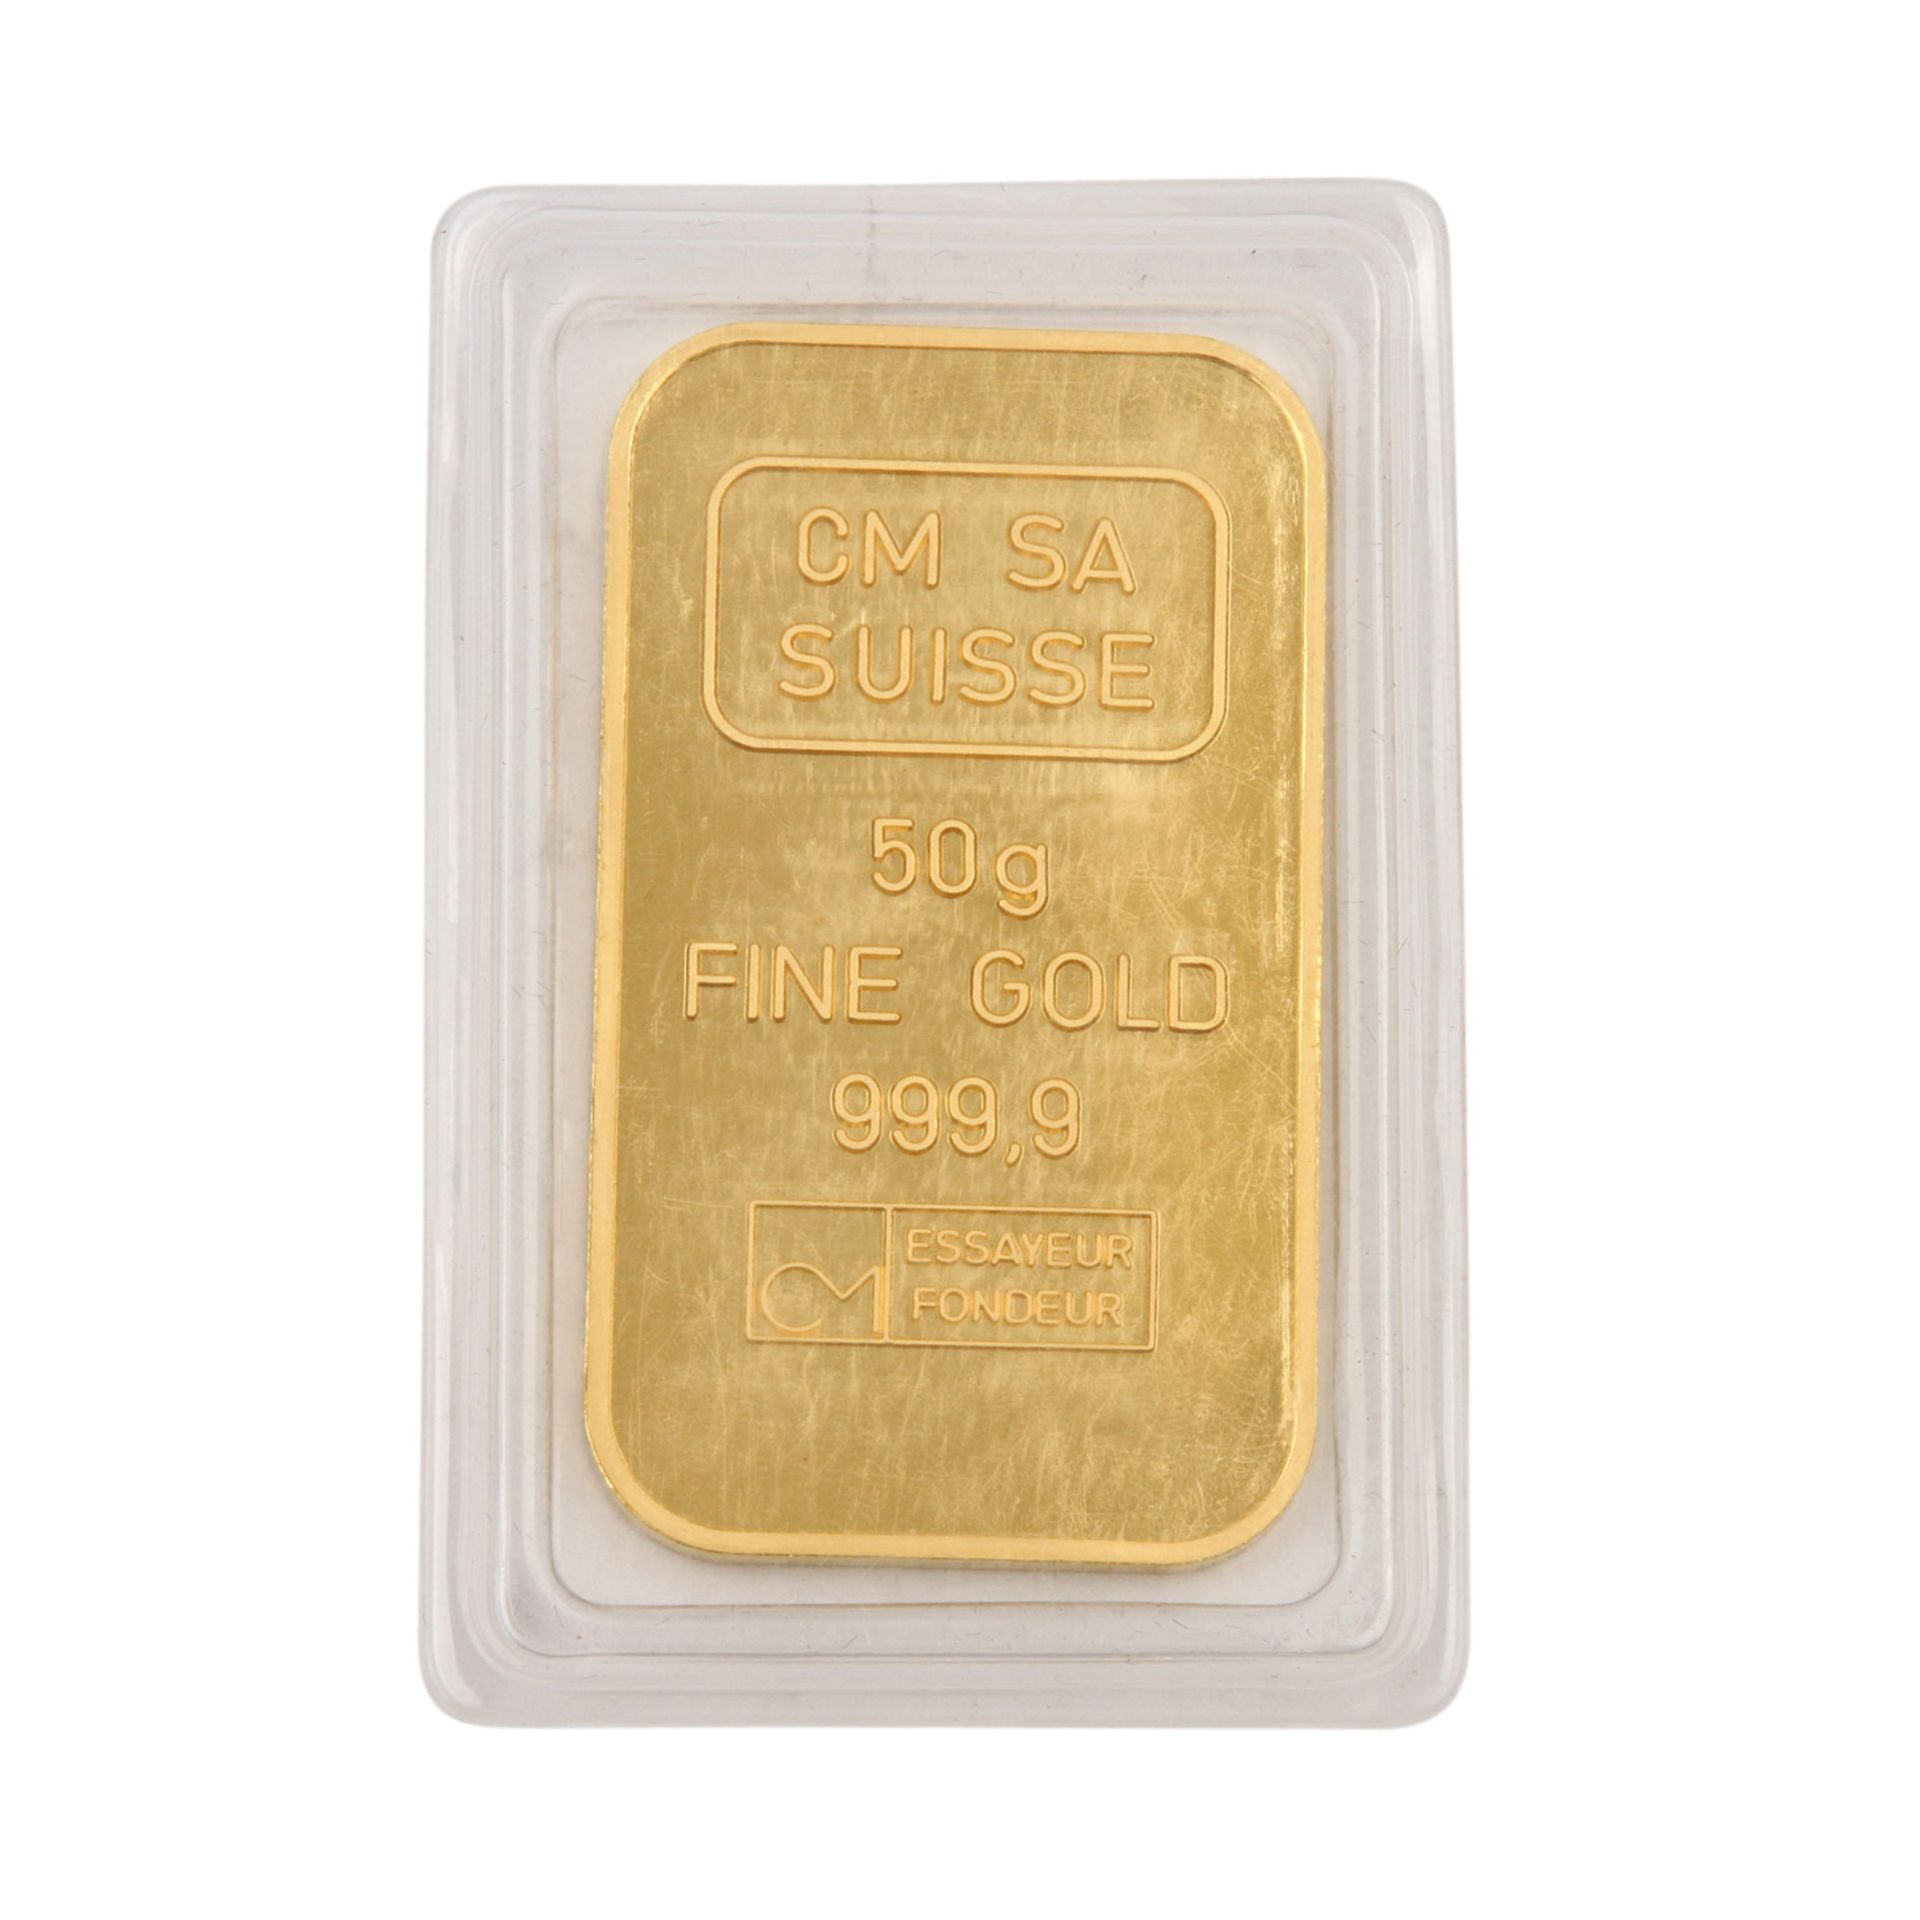 50g Goldbarren - 50g GOLD fein, geprägter Goldbarren von CM SA Suisse, eingeschweißt.